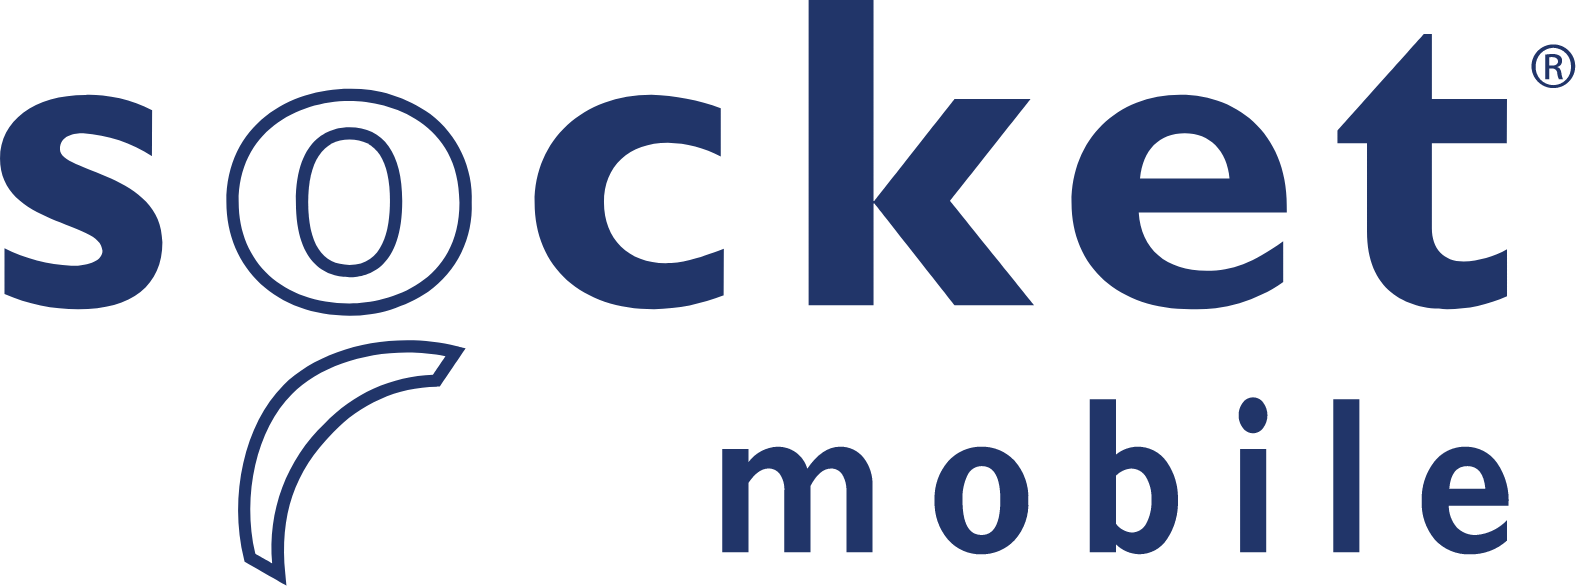 Socket Mobile logo large (transparent PNG)